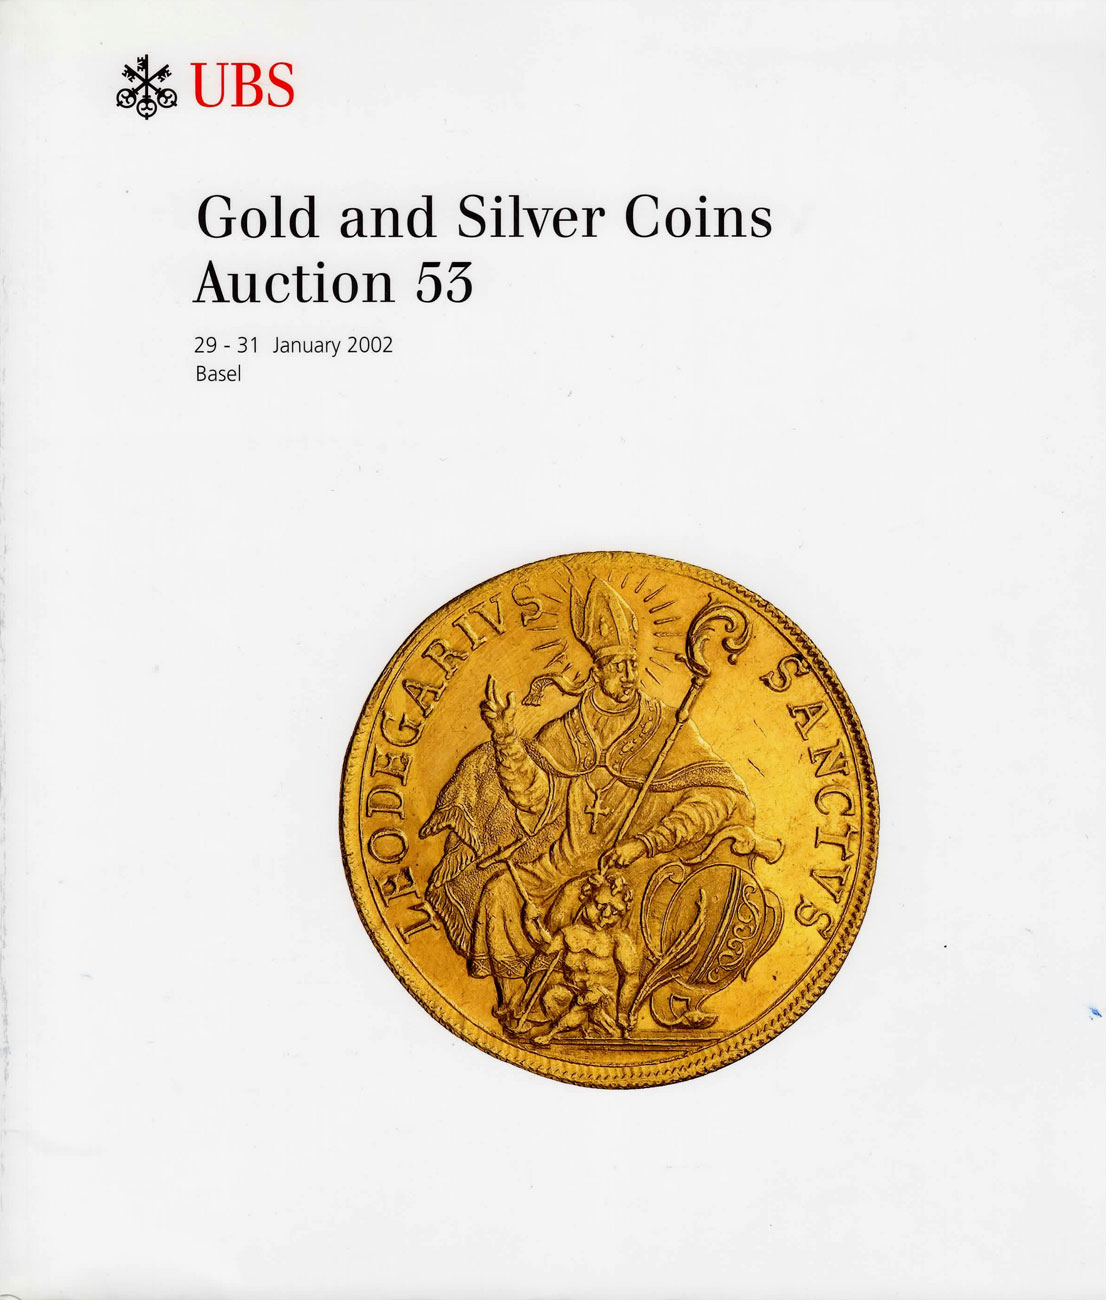 Лот №811, UBS, Базель, каталог аукциона. 29-31 января 2002 года. Gold and Silver Coins. (Золотые и серебряные монеты). Аукцион № 53..